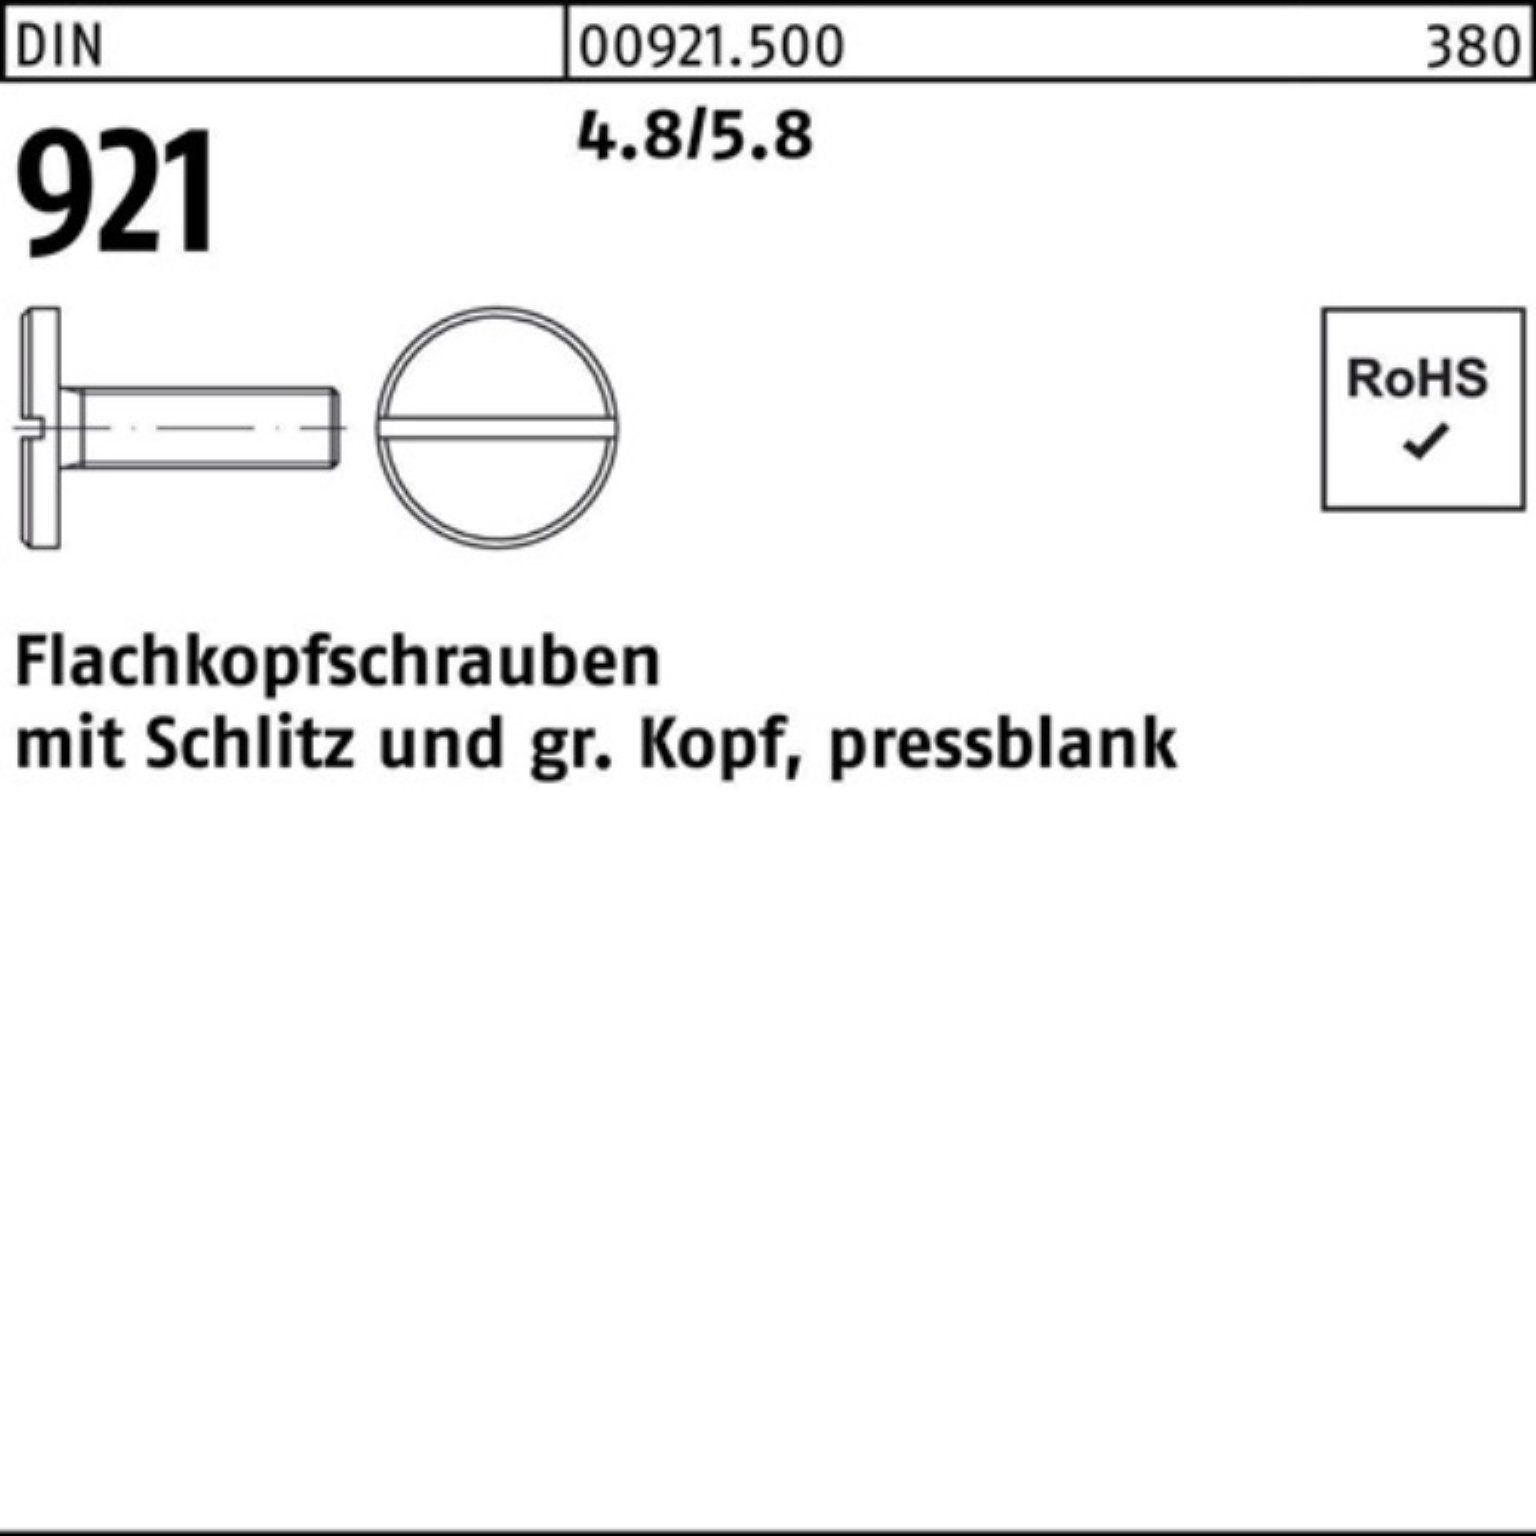 Reyher Flachkopfschraube 921 4.8/5.8 Pack 100 Schraube 10 DIN 100er Stück Schlitz M5x